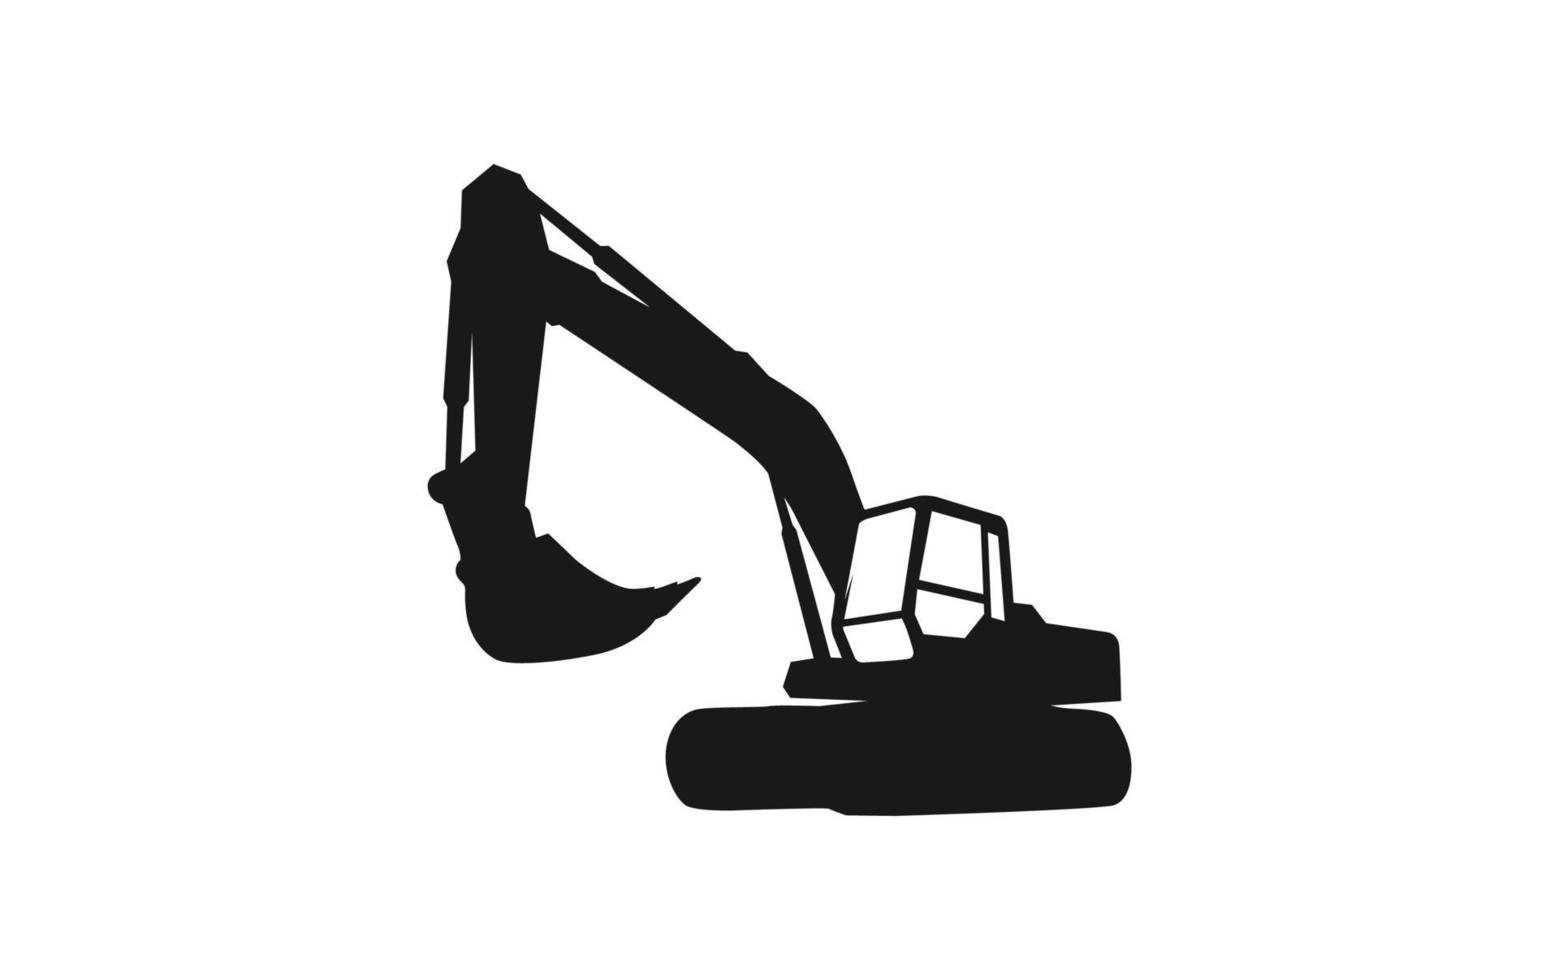 Bagger-Logo-Vorlagenvektor. Logo-Vektor für schwere Ausrüstung für Bauunternehmen. kreative baggerillustration für logo-vorlage. vektor